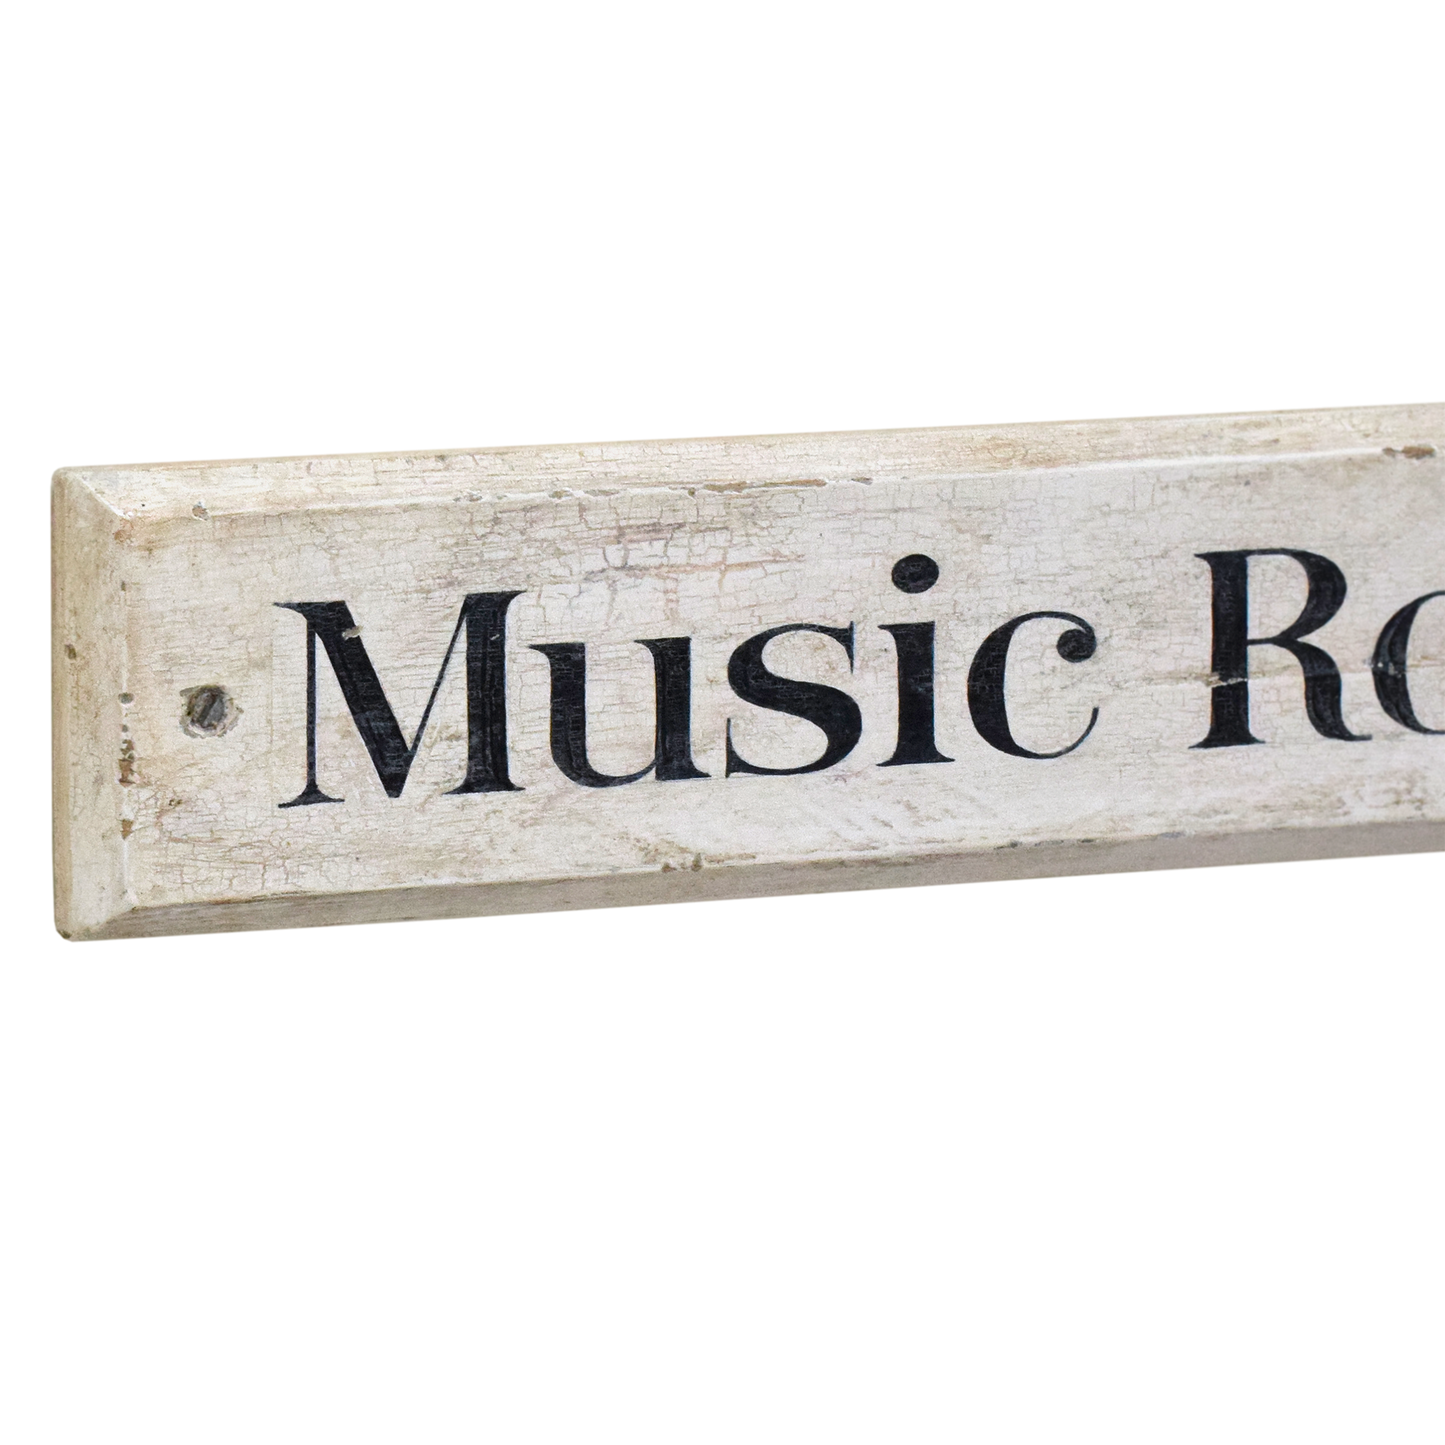 Painted Wooden Door Sign: Music Room